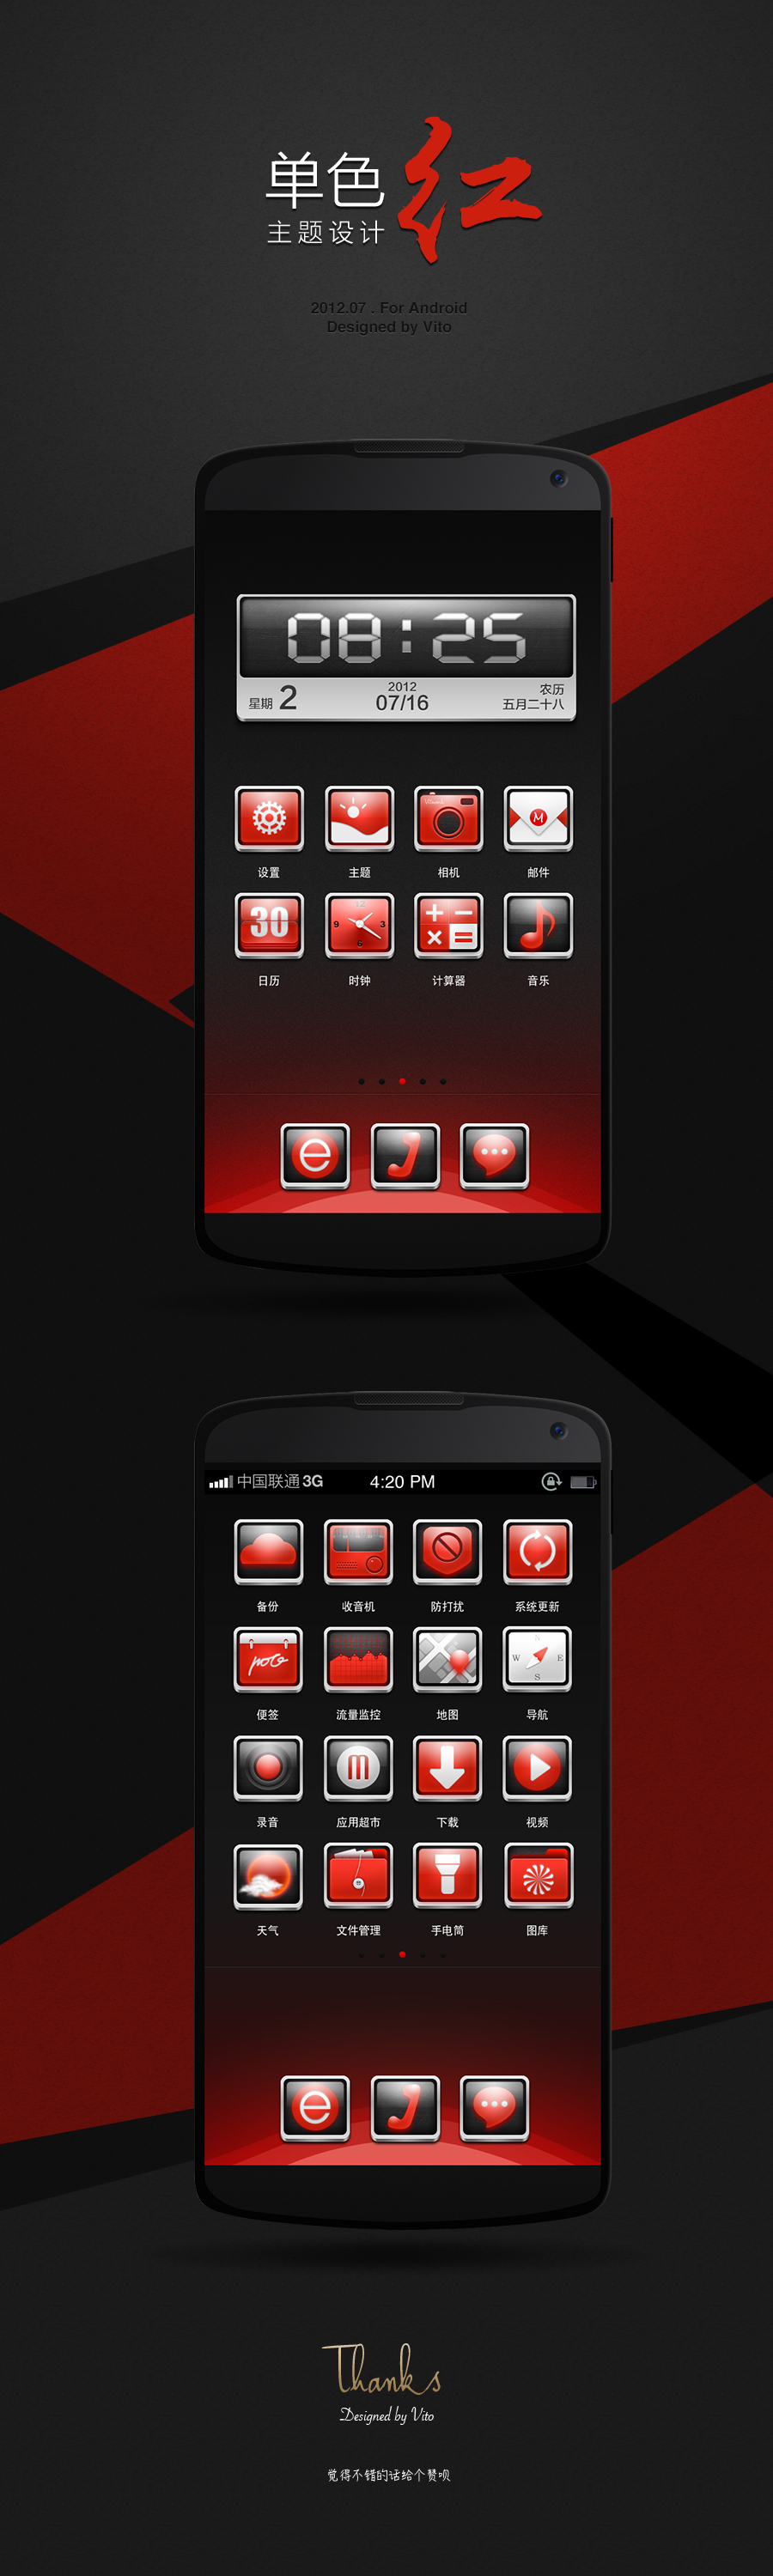 Android主题设计——红黑主题图0